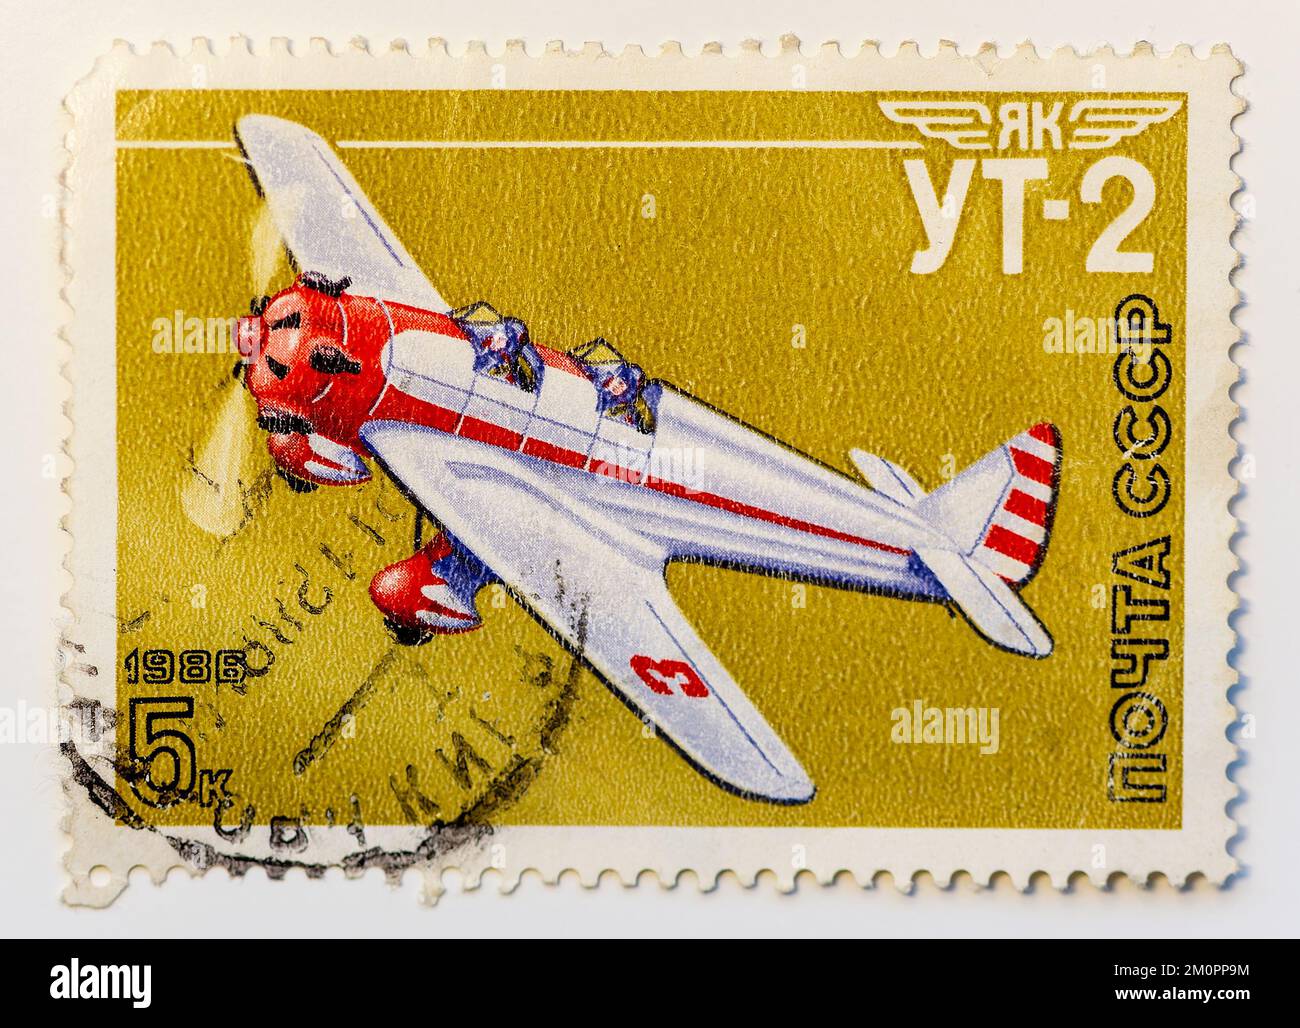 URSS - CIRCA 1986: Post francobollo 5 copeck mostra Yakovlev UT-2 Mink, monoplano monotomotore a due posti ad ala bassa, allenatore sovietico durante il Grande Foto Stock